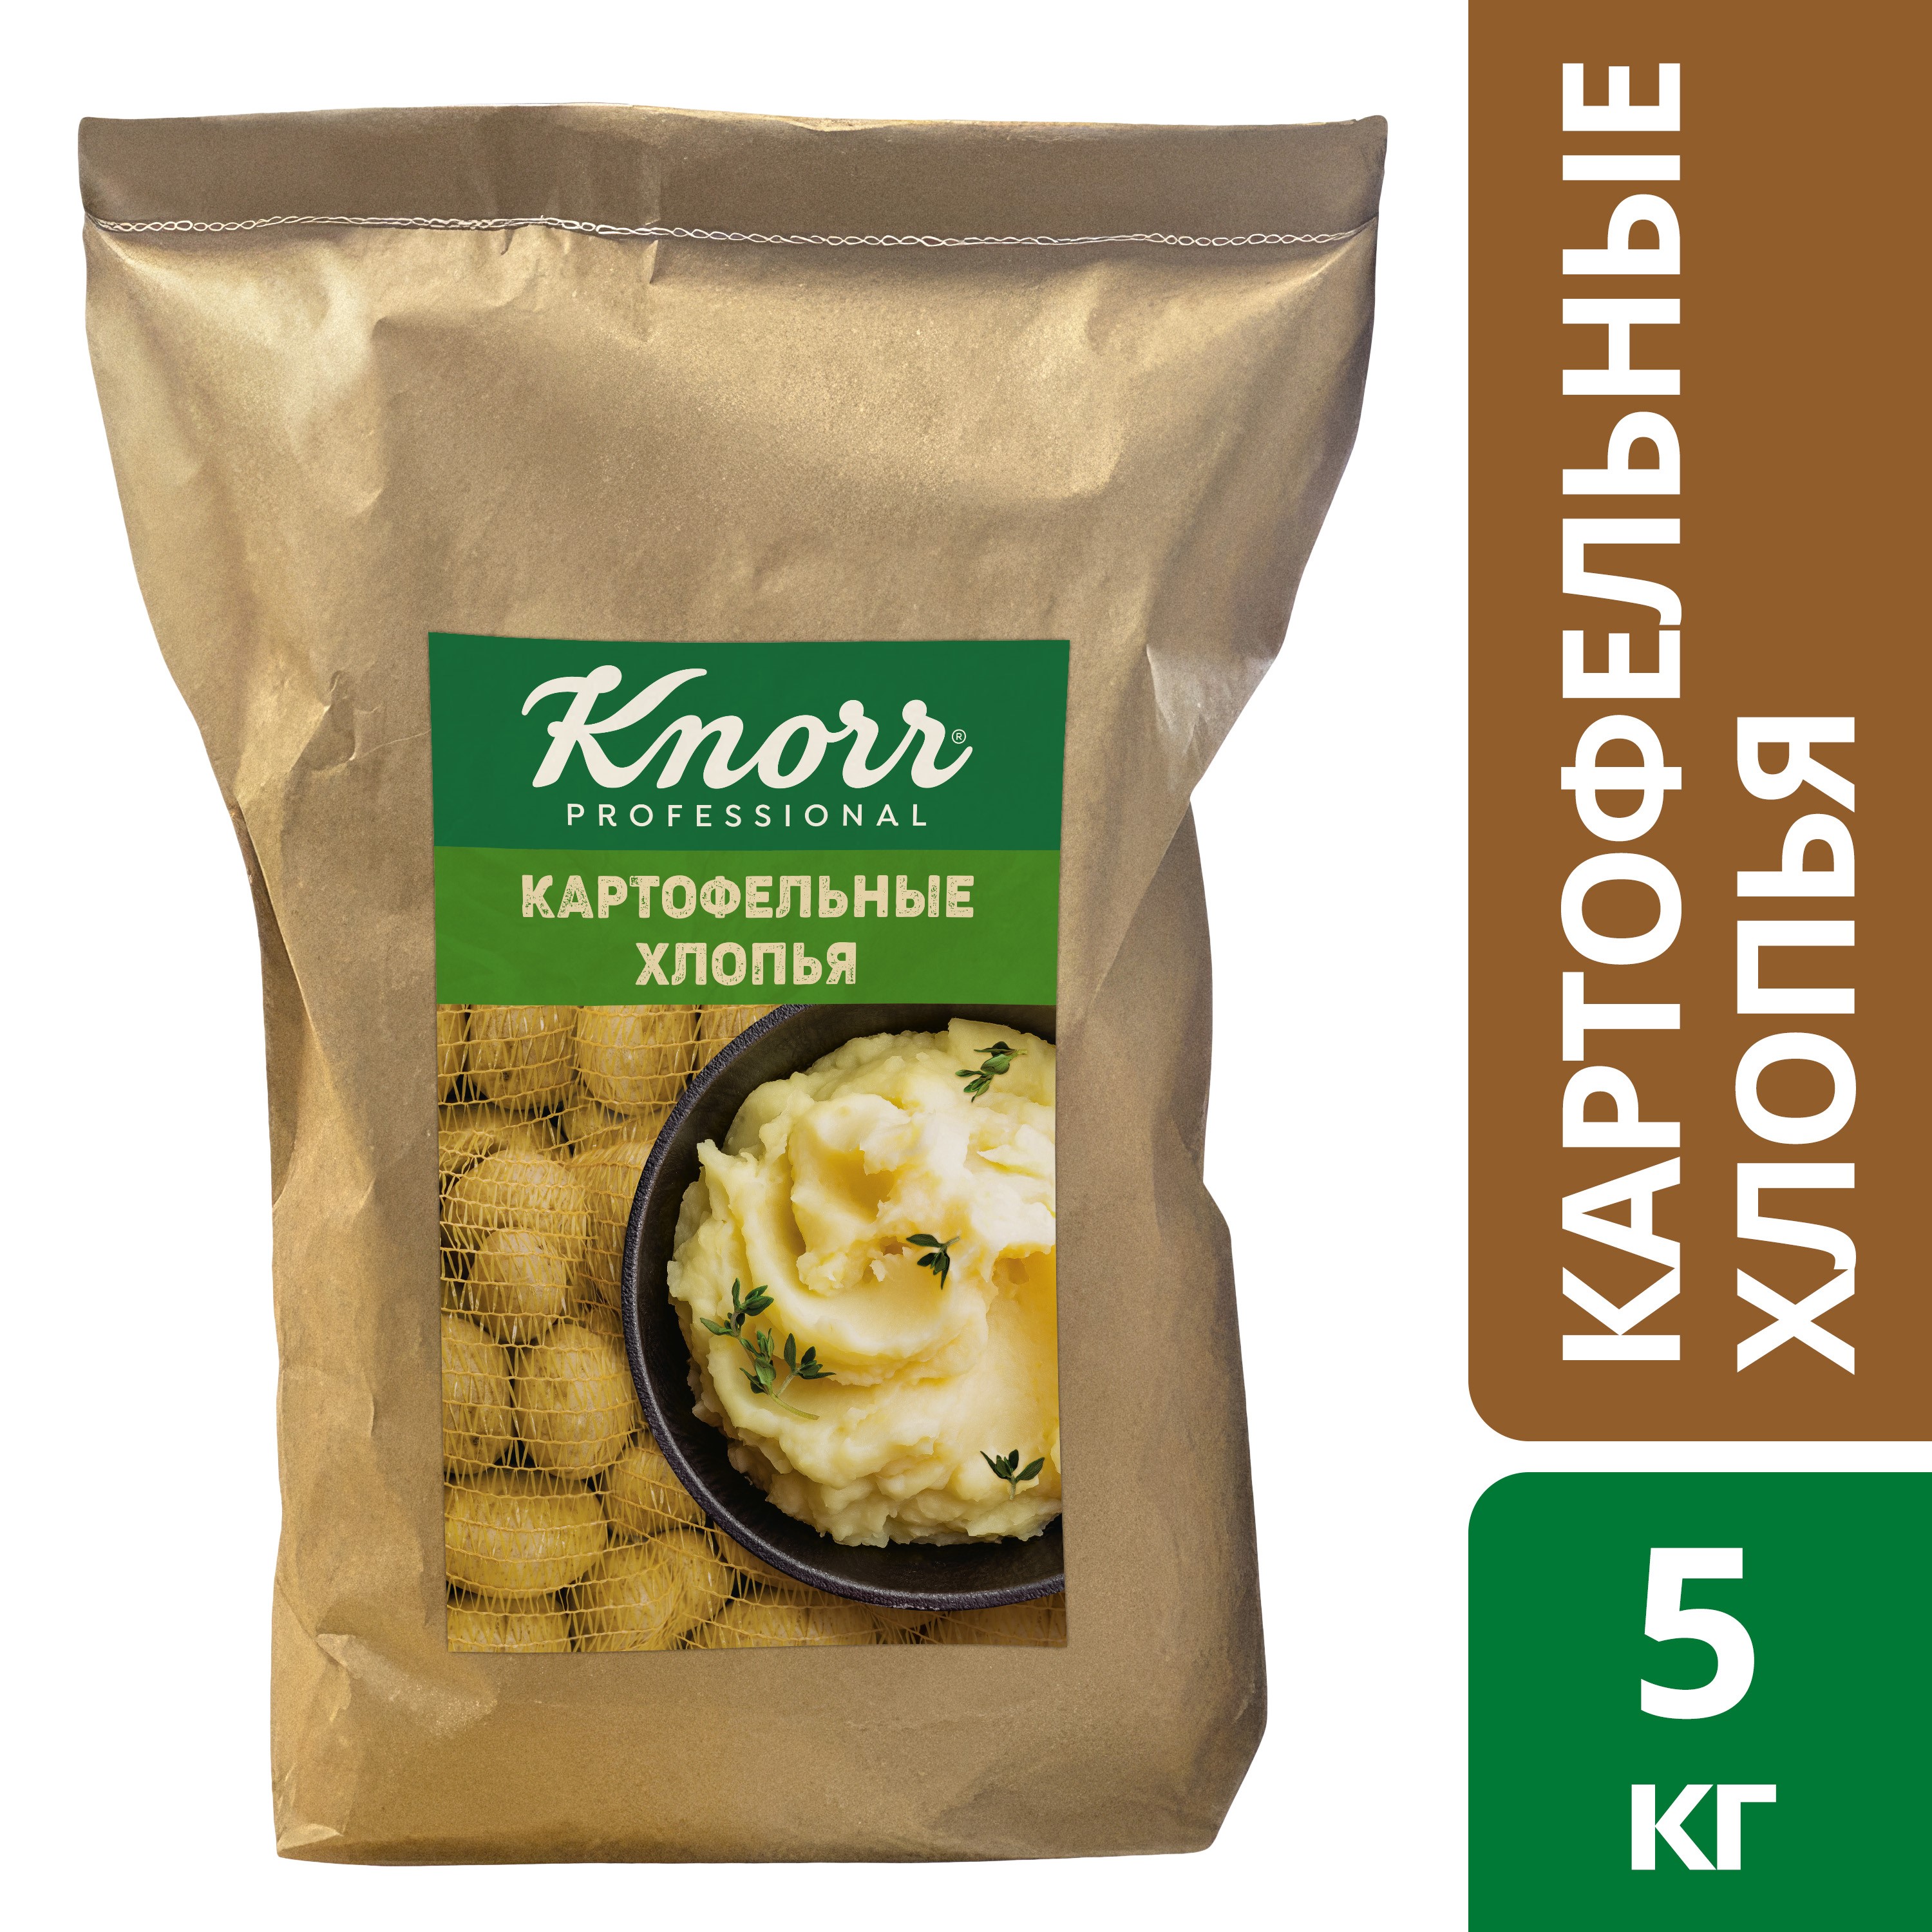 KNORR PROFESSIONAL Картофельные хлопья (5кг)